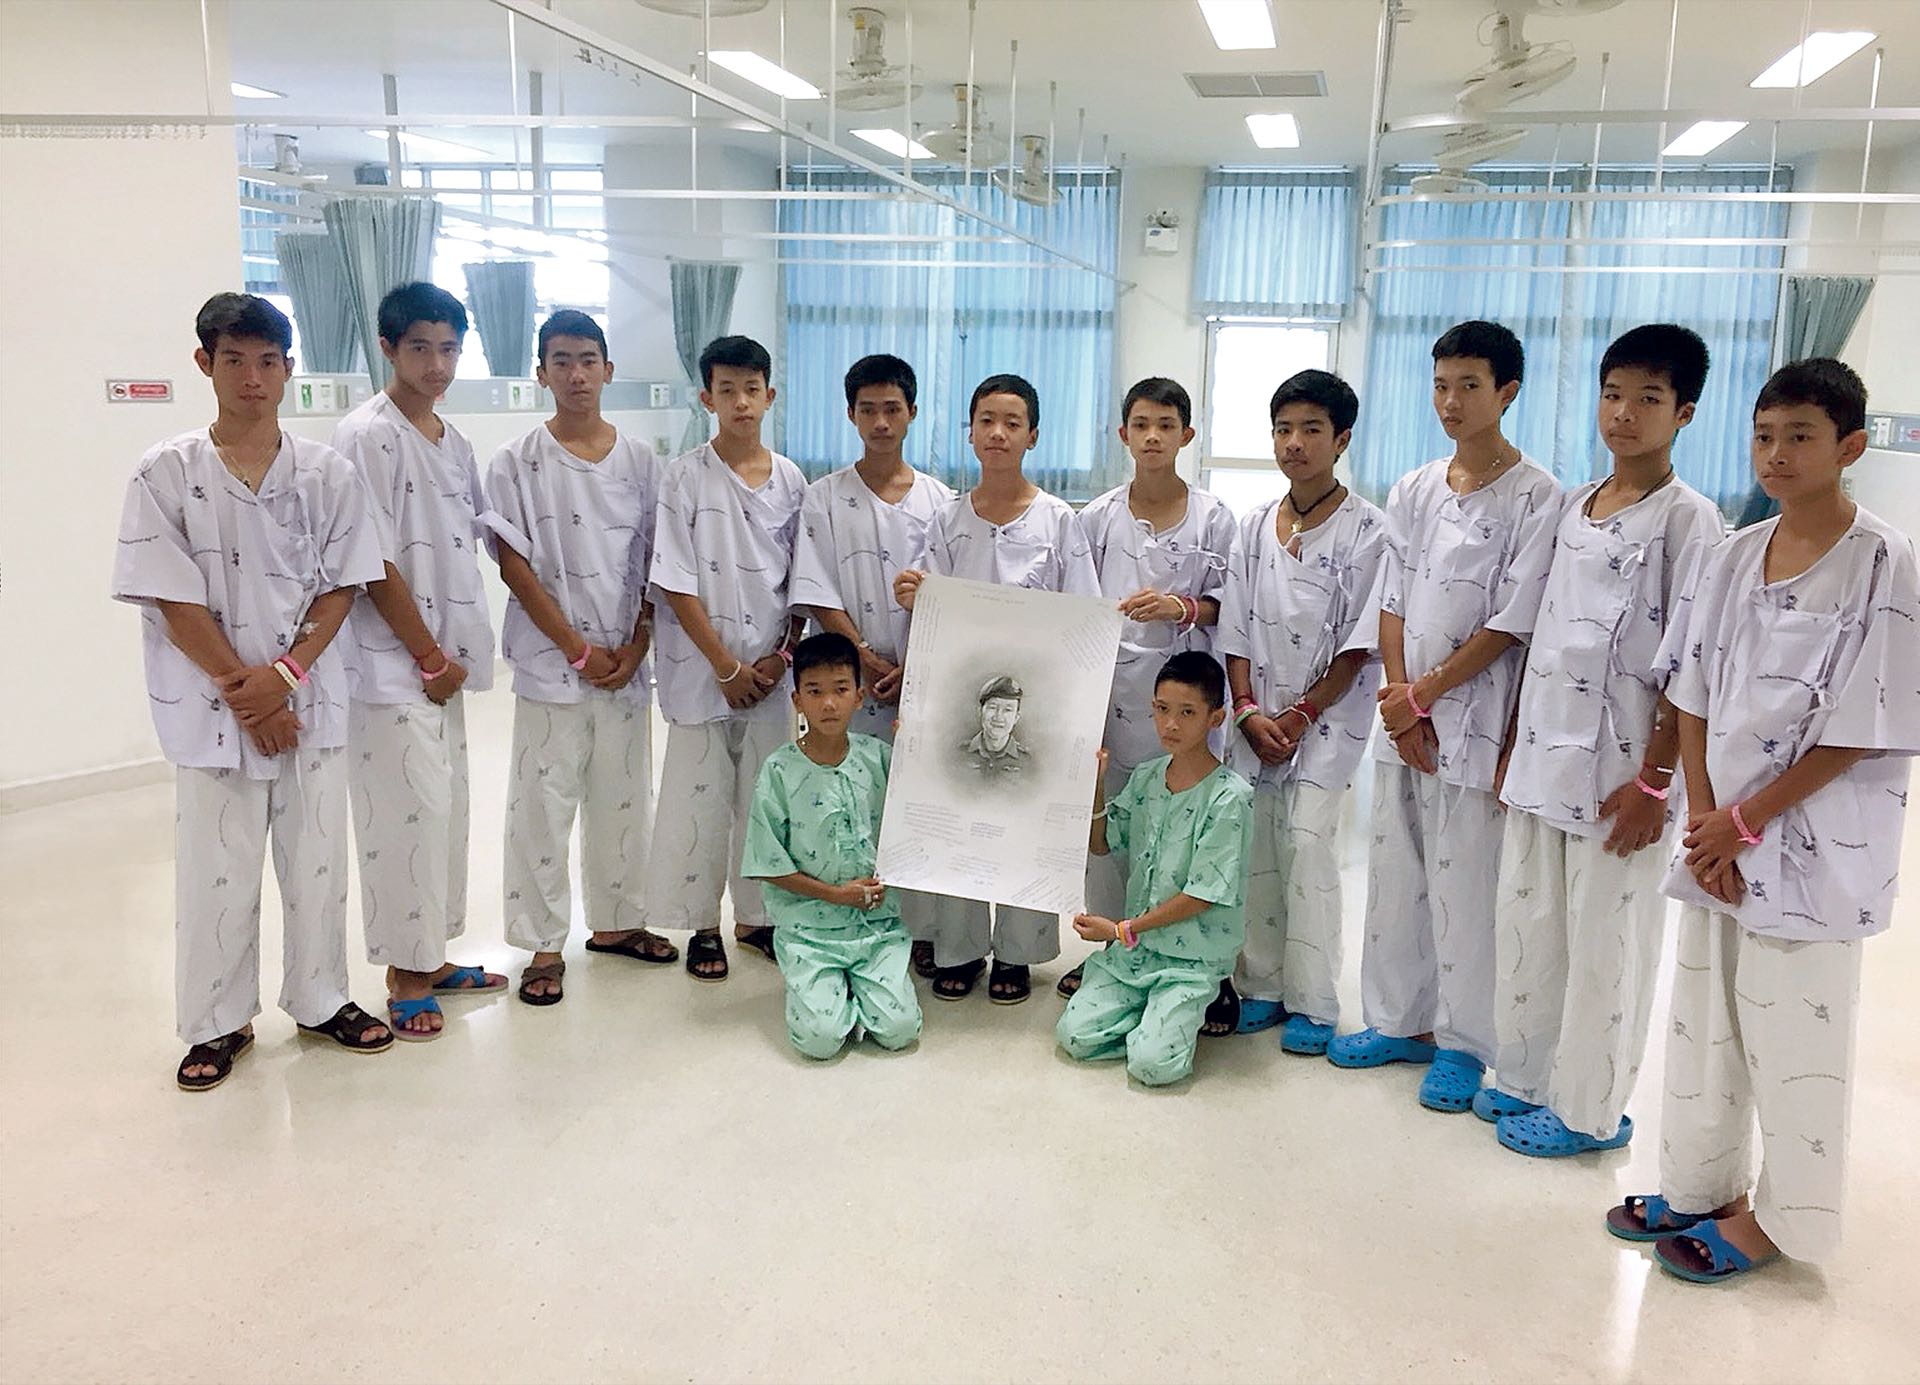 Los 12 niños y el entrenador rescatados en Tailandia en el Hospital Chiang Rai Prachanukroh, donde pasaron una cuarentena luego del encierro, rindieron tributo al buzo fallecido durante el operativo (AFP)